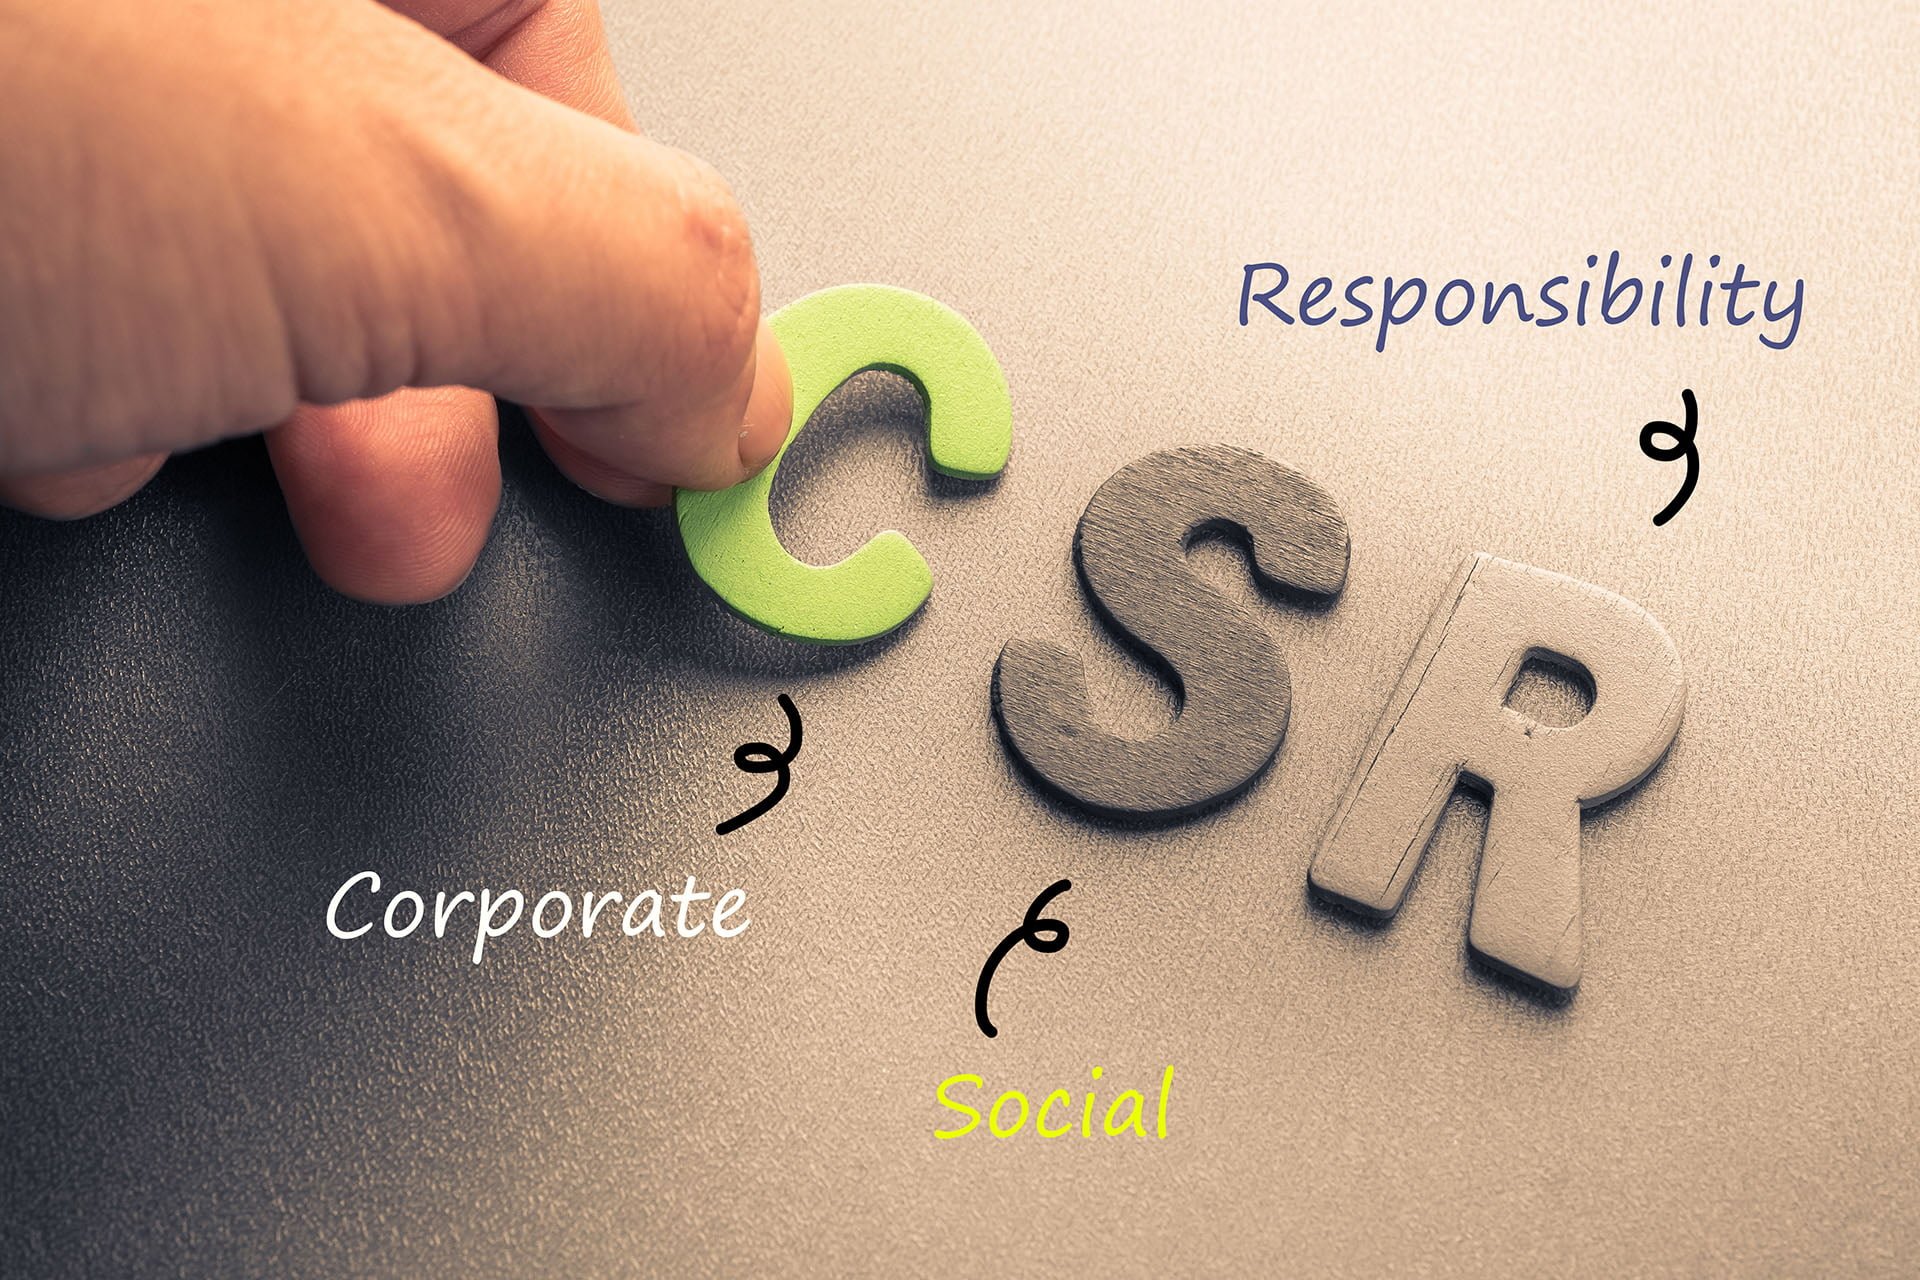 Pengertian csr adalah tanggung jawab perushaan, tanggung jawab sosial perusahaan